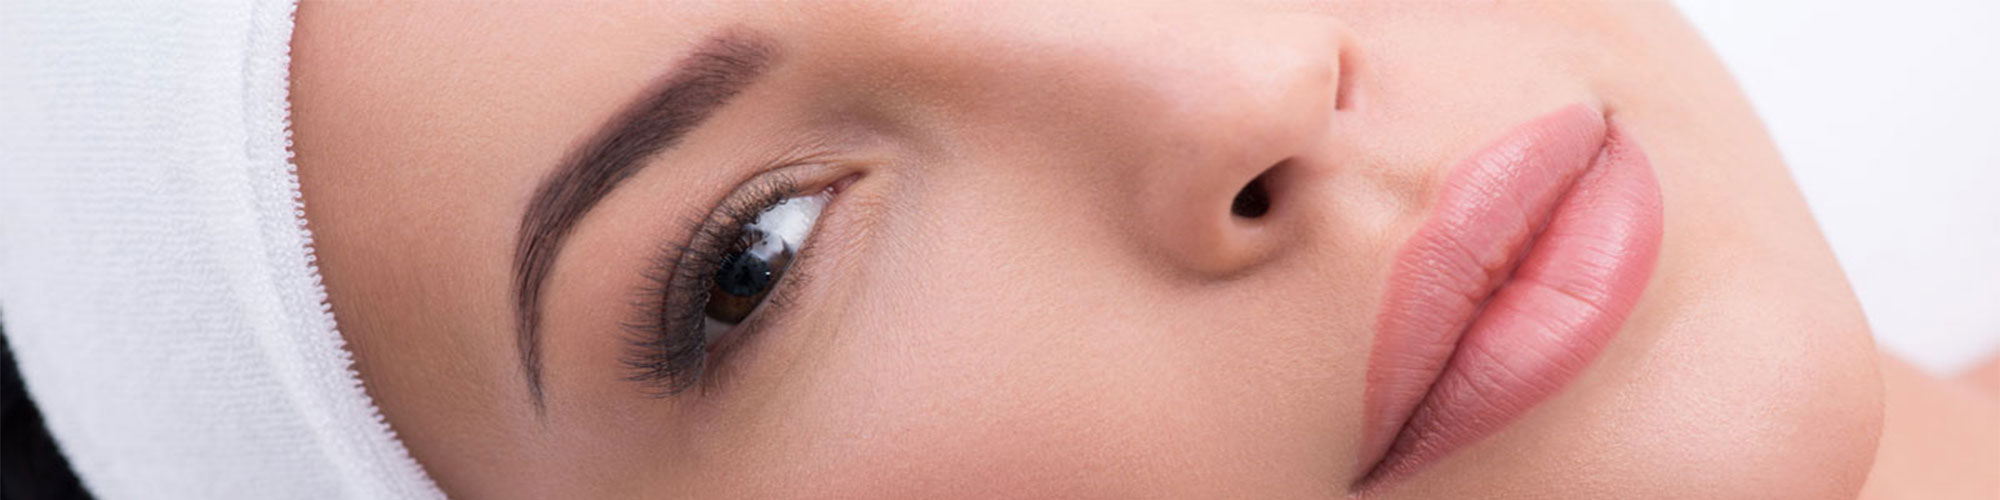 Frauengesicht mit Permanent Make Up Lippen Augenbrauen Augenkontur